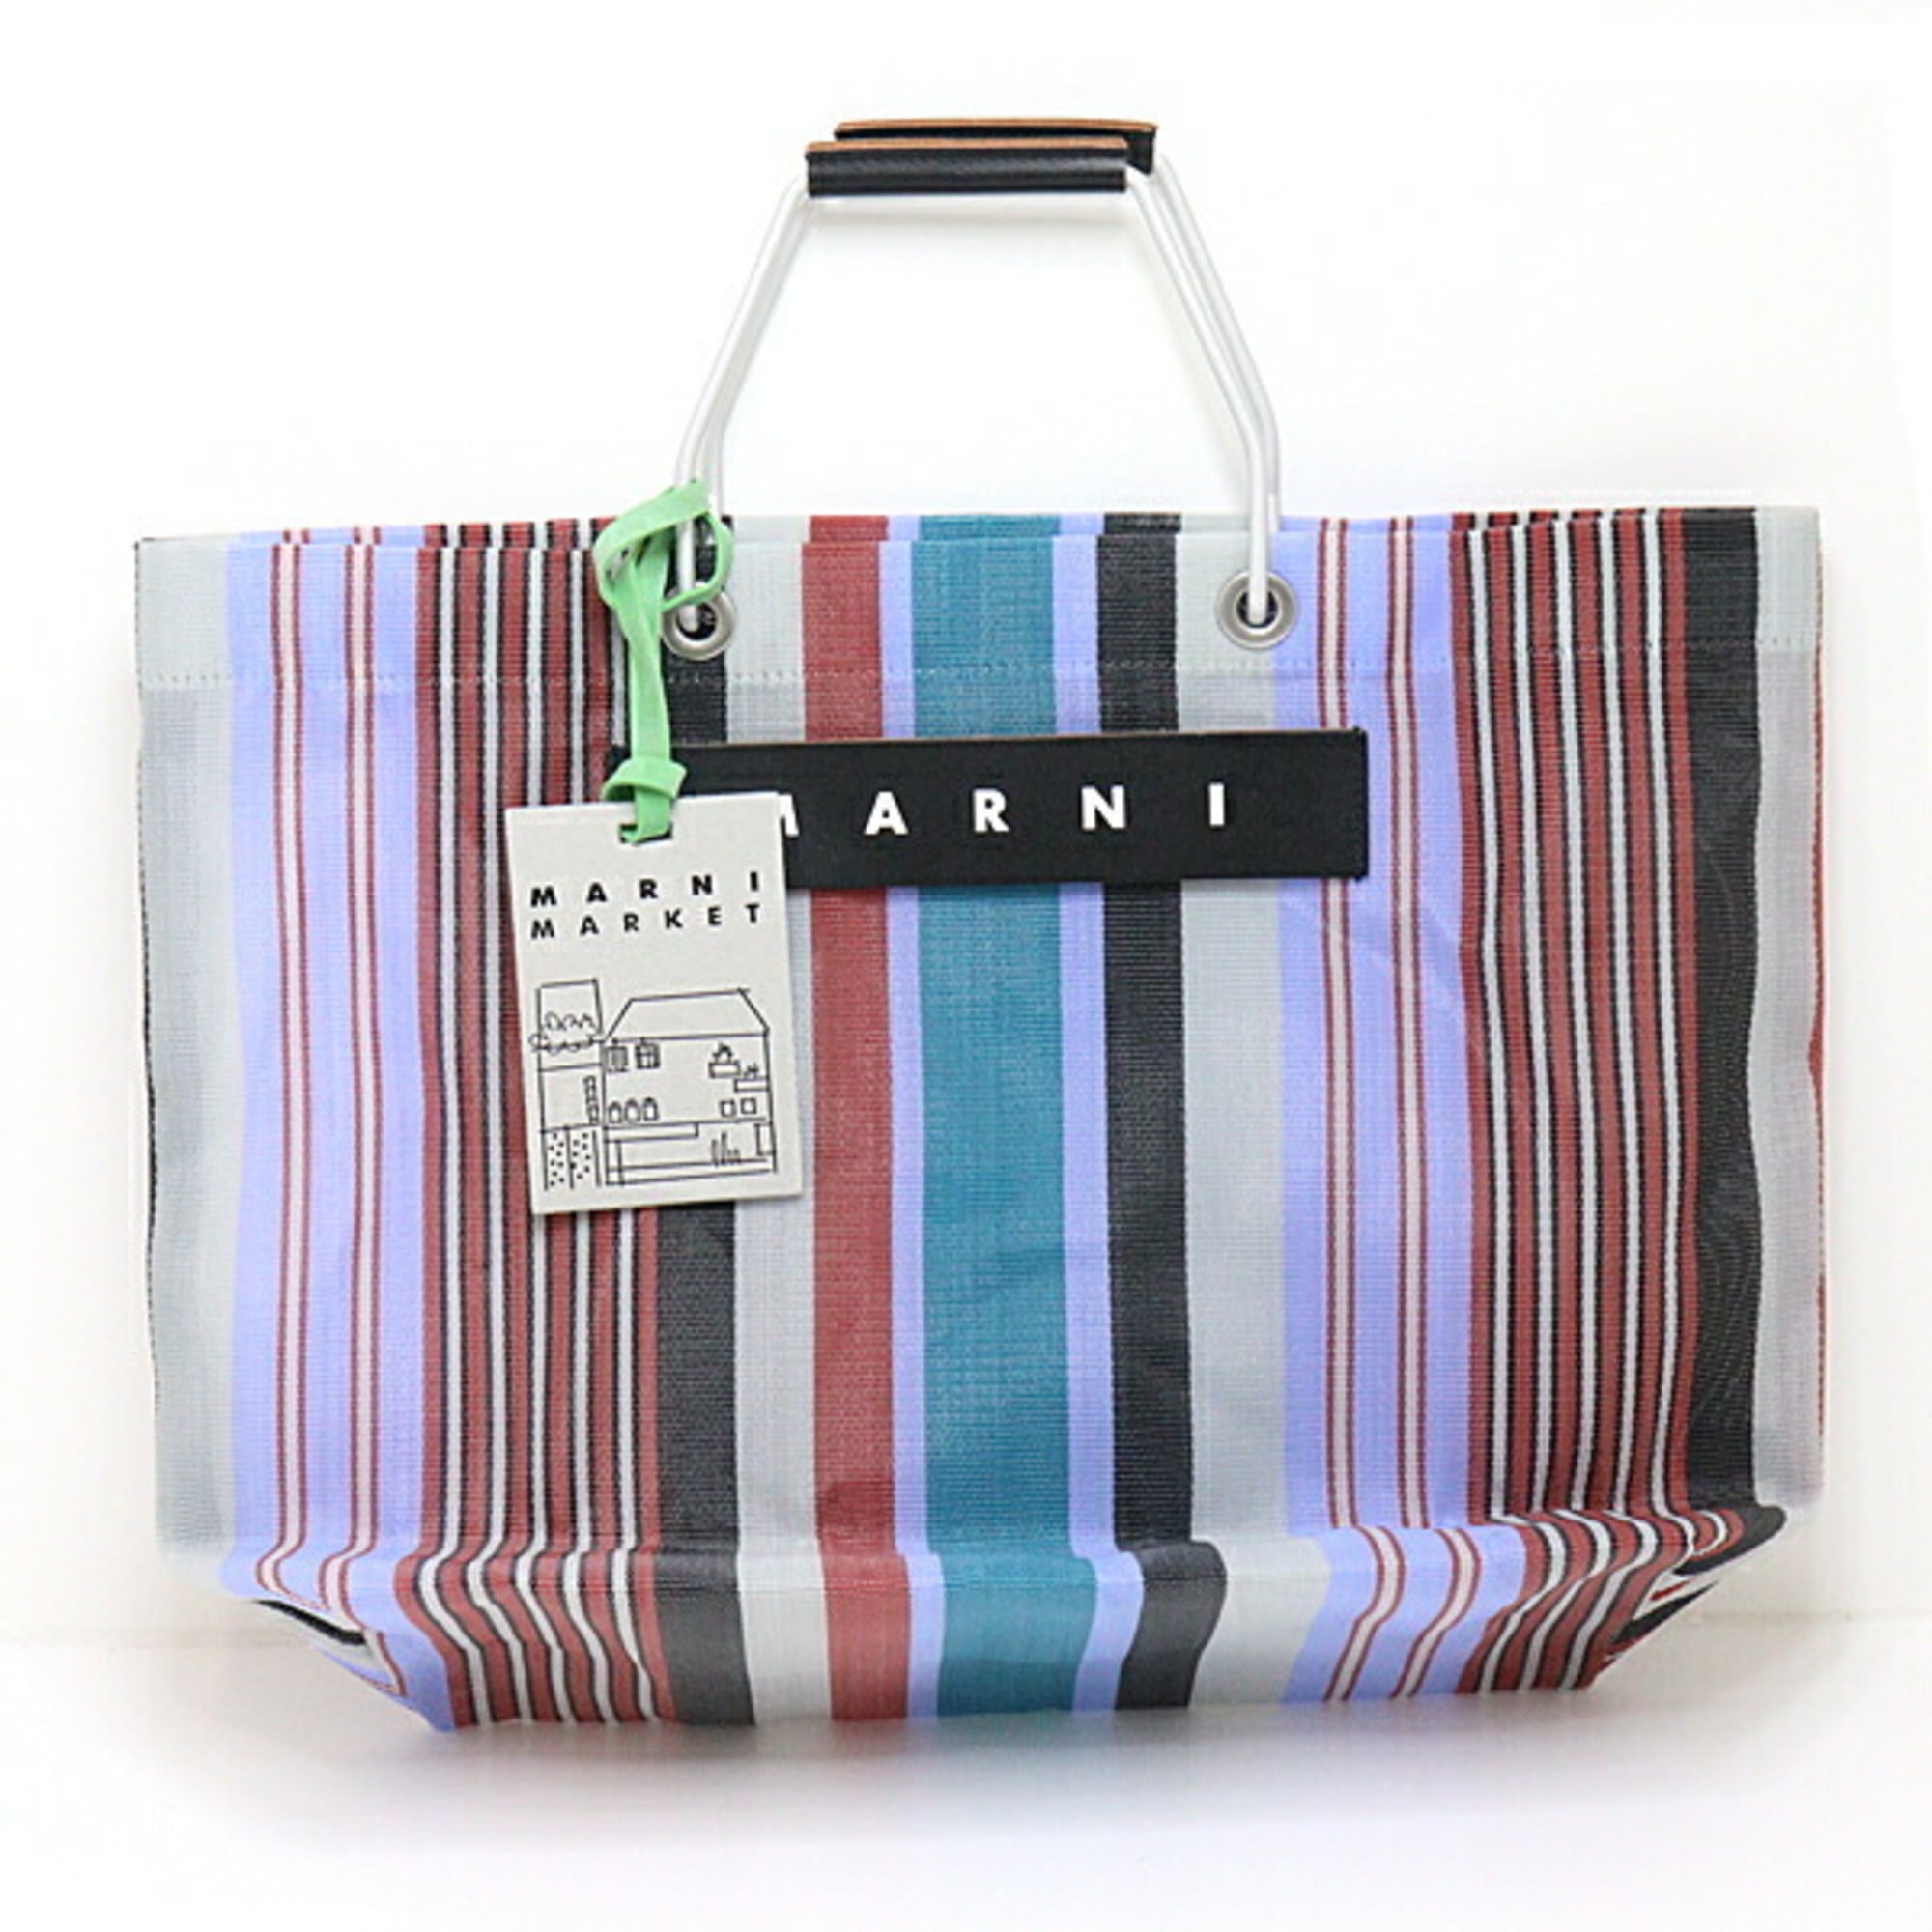 Pre-Owned MARNI Marni Market stripe medium bag tote multicolor 